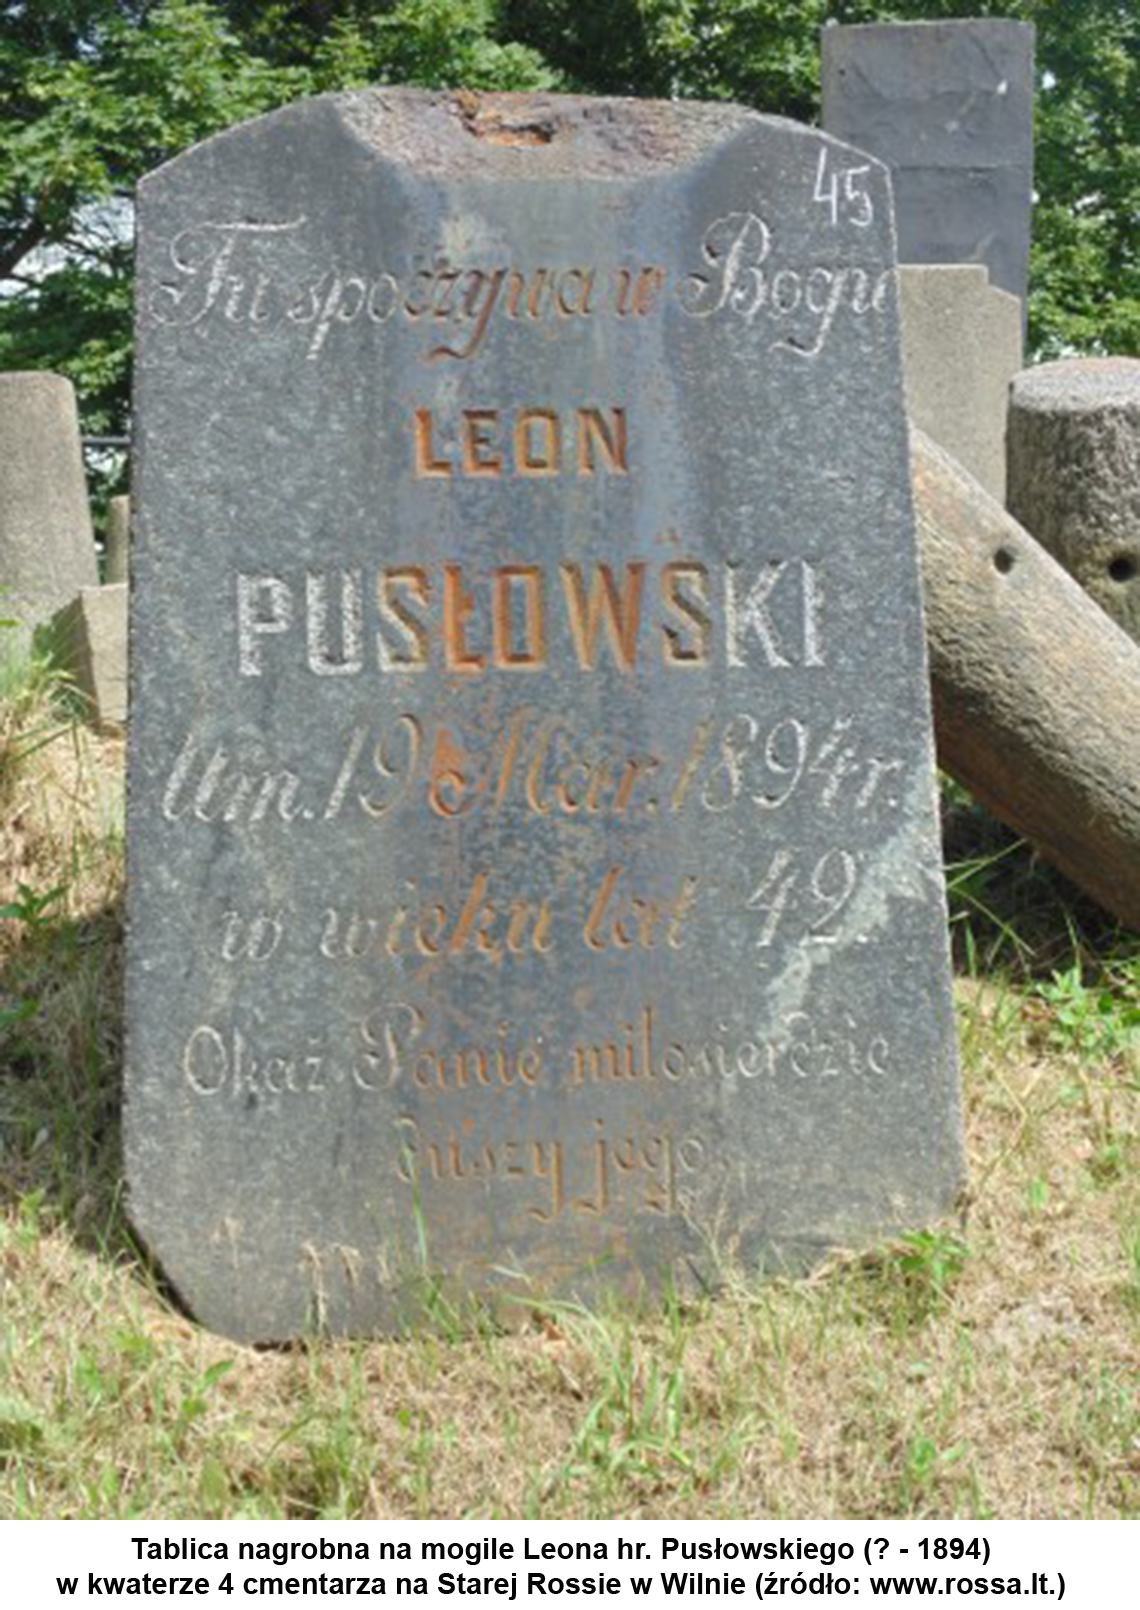 Tablica nagrobna na mogile Leona hr. Pusłowskiego (? - 1894) w kwaterze 4 cmentarza na Starej Rossie w Wilnie (źródło www.rossa.lt.)